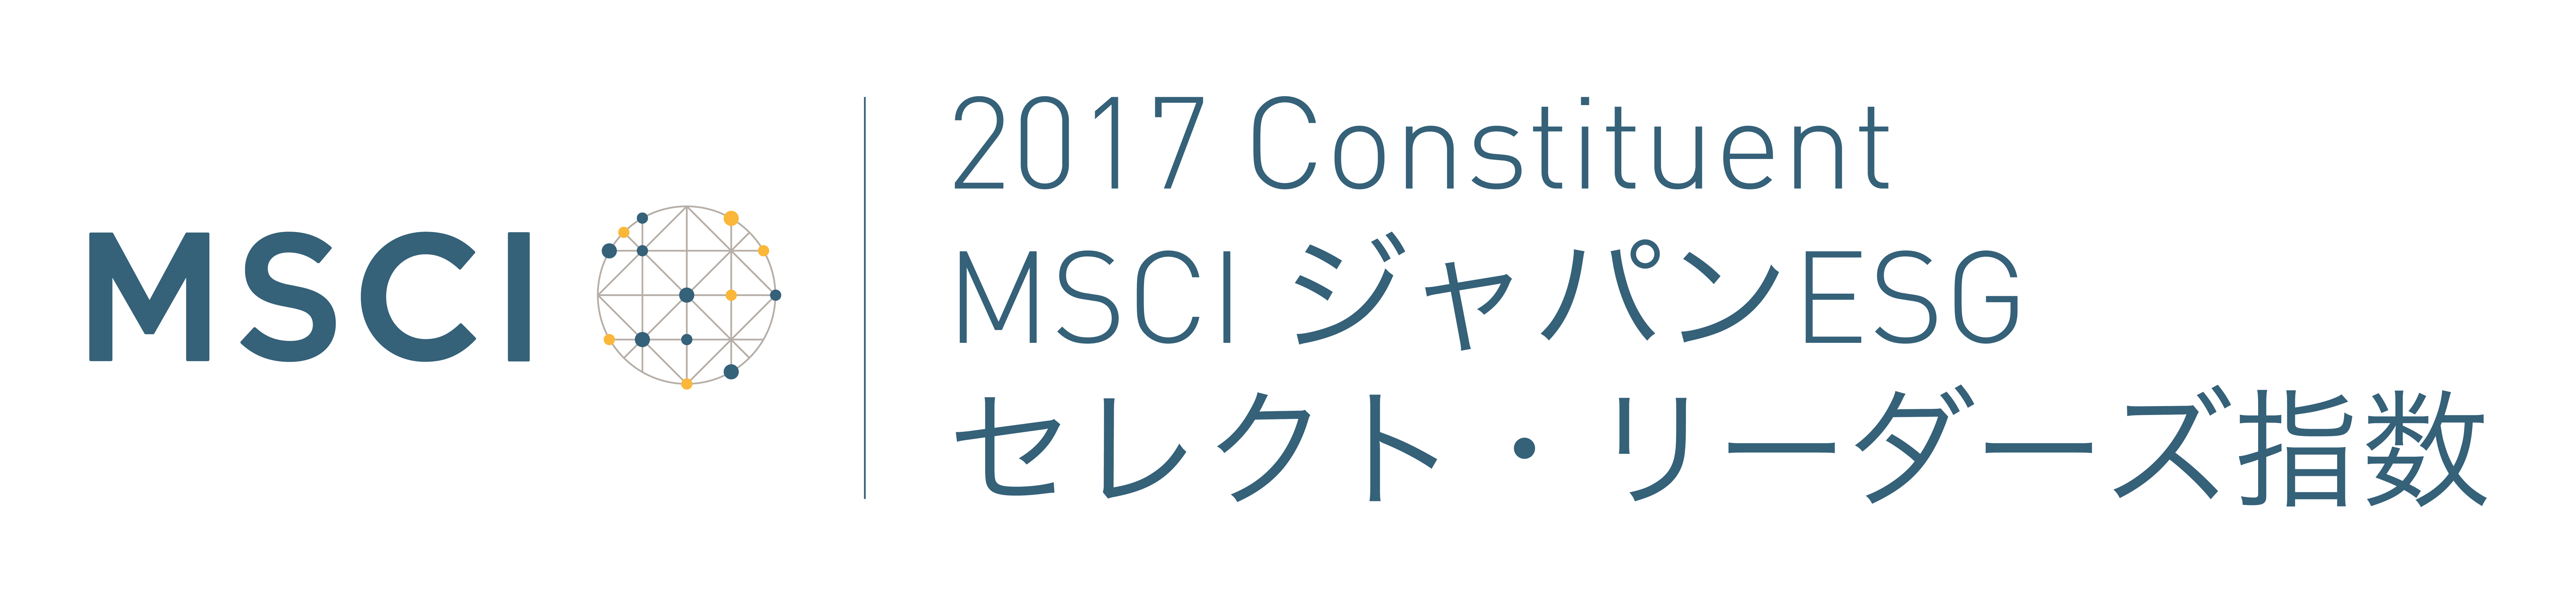 msci-japan-esg-select-leaders